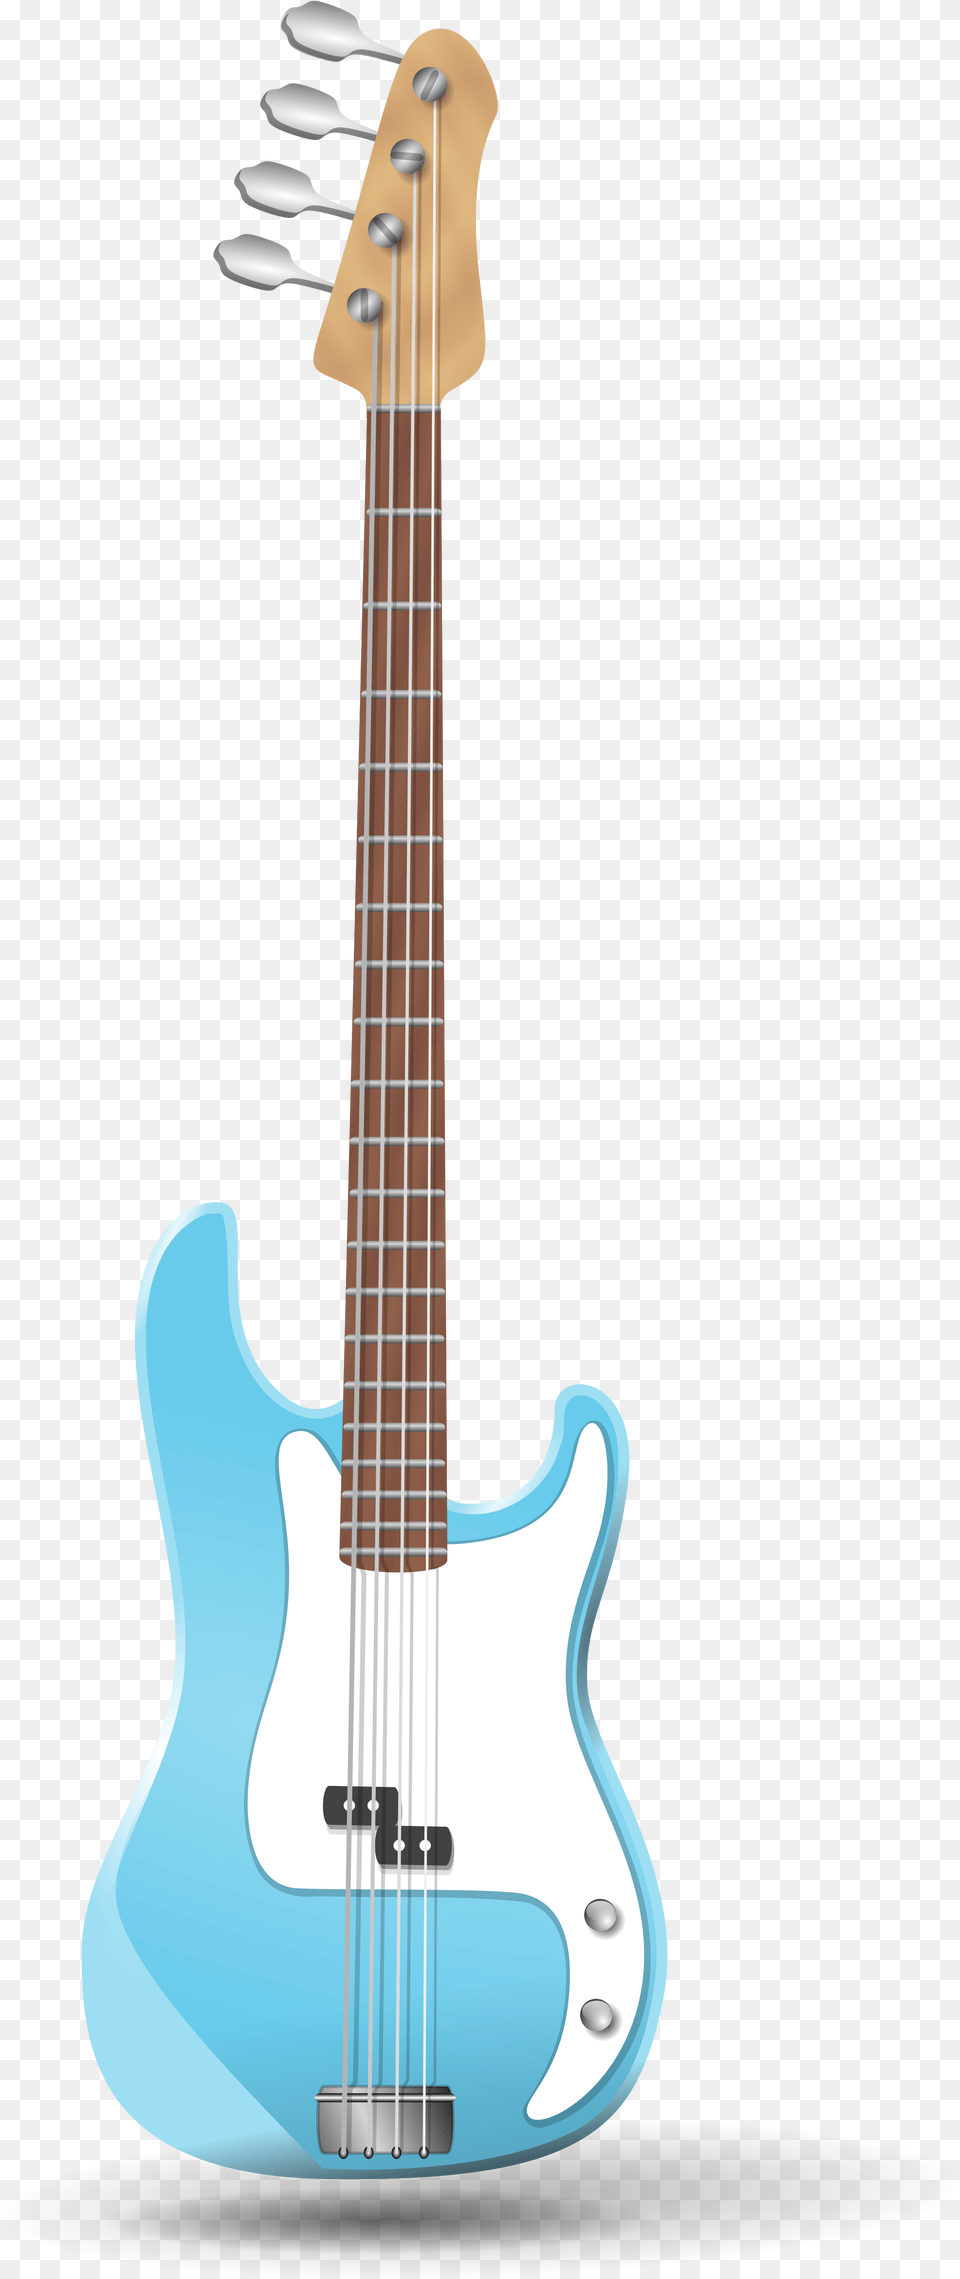 Clipart Guitar Bass Bass Guitar Clip Art, Bass Guitar, Musical Instrument Png Image